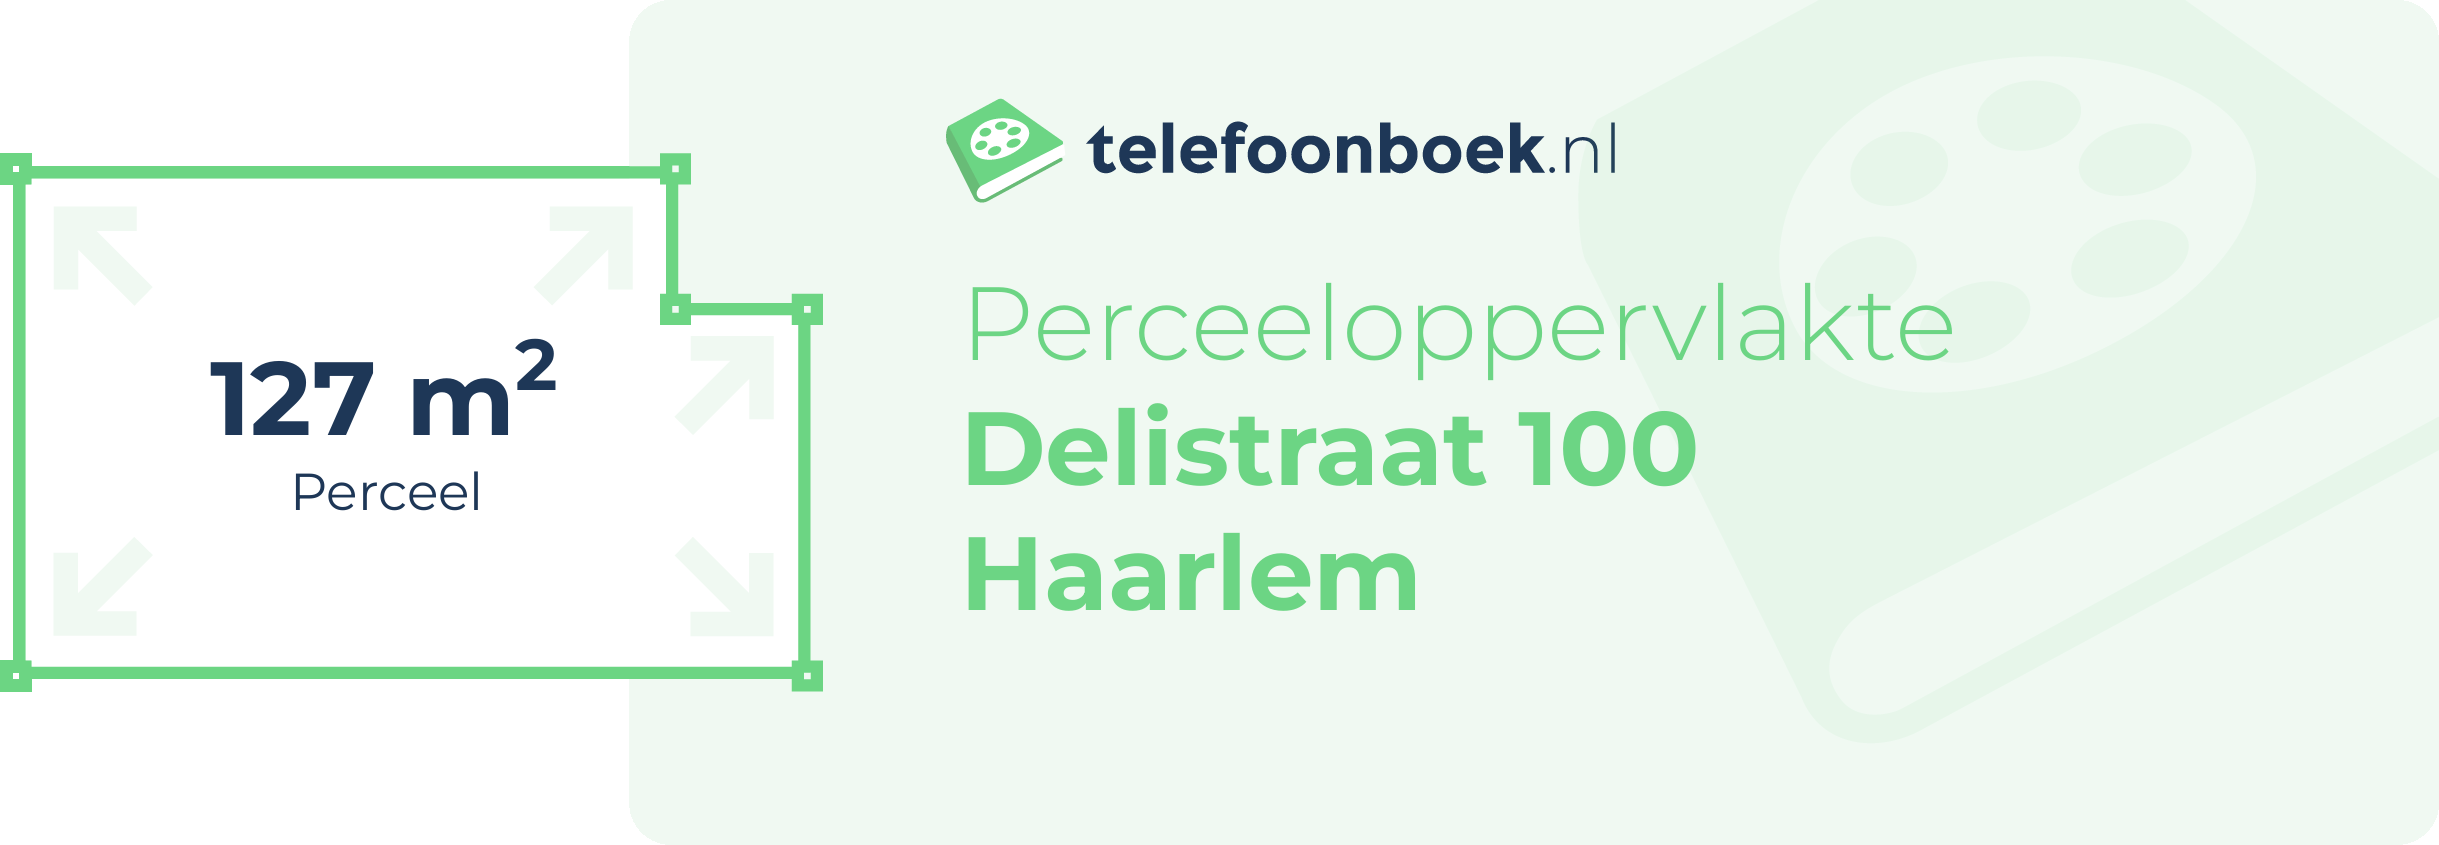 Perceeloppervlakte Delistraat 100 Haarlem